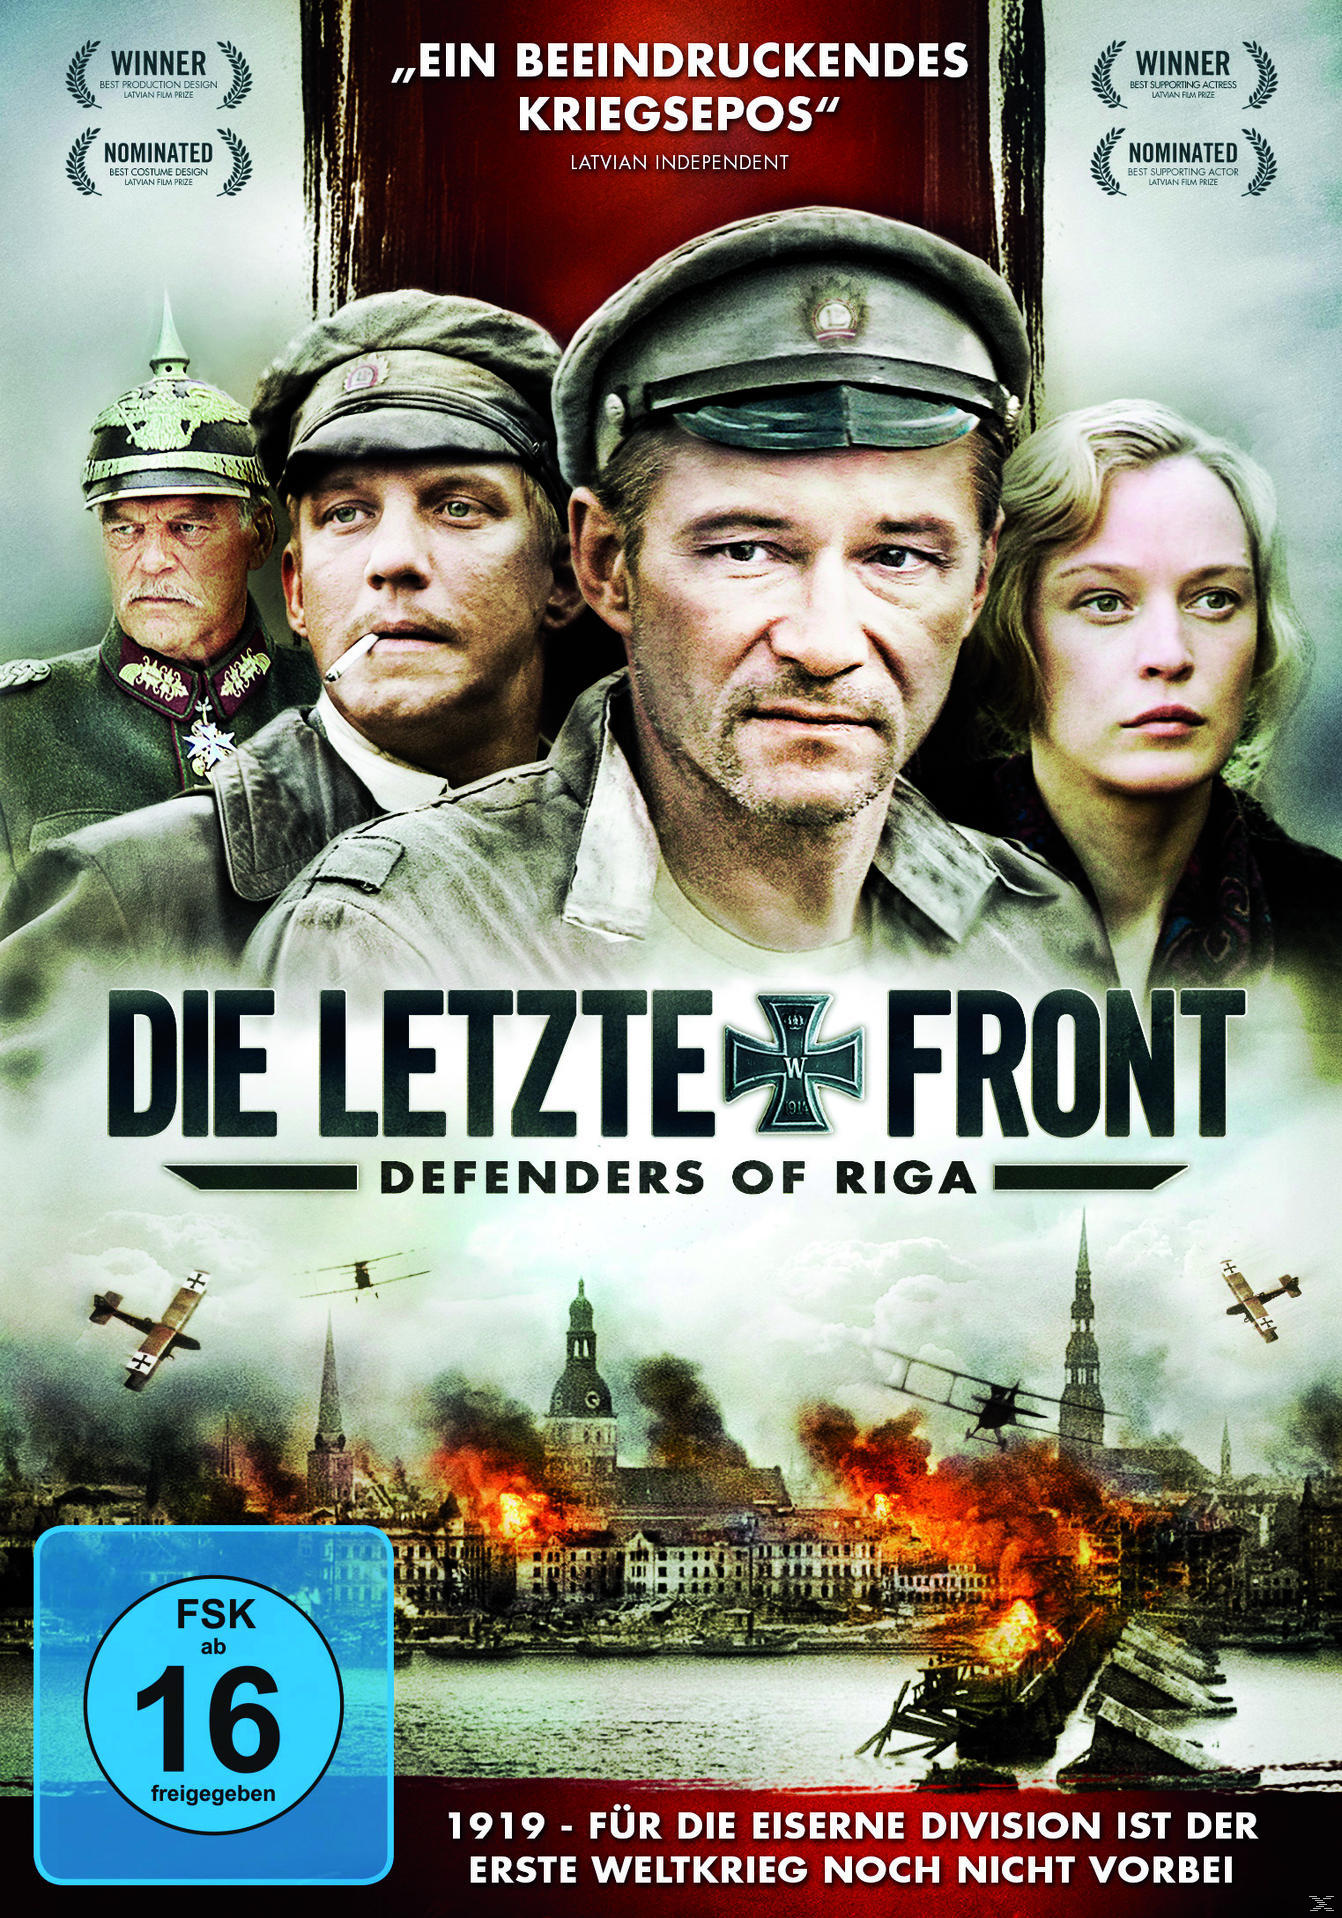 Die letzte Front - Defenders Riga DVD of